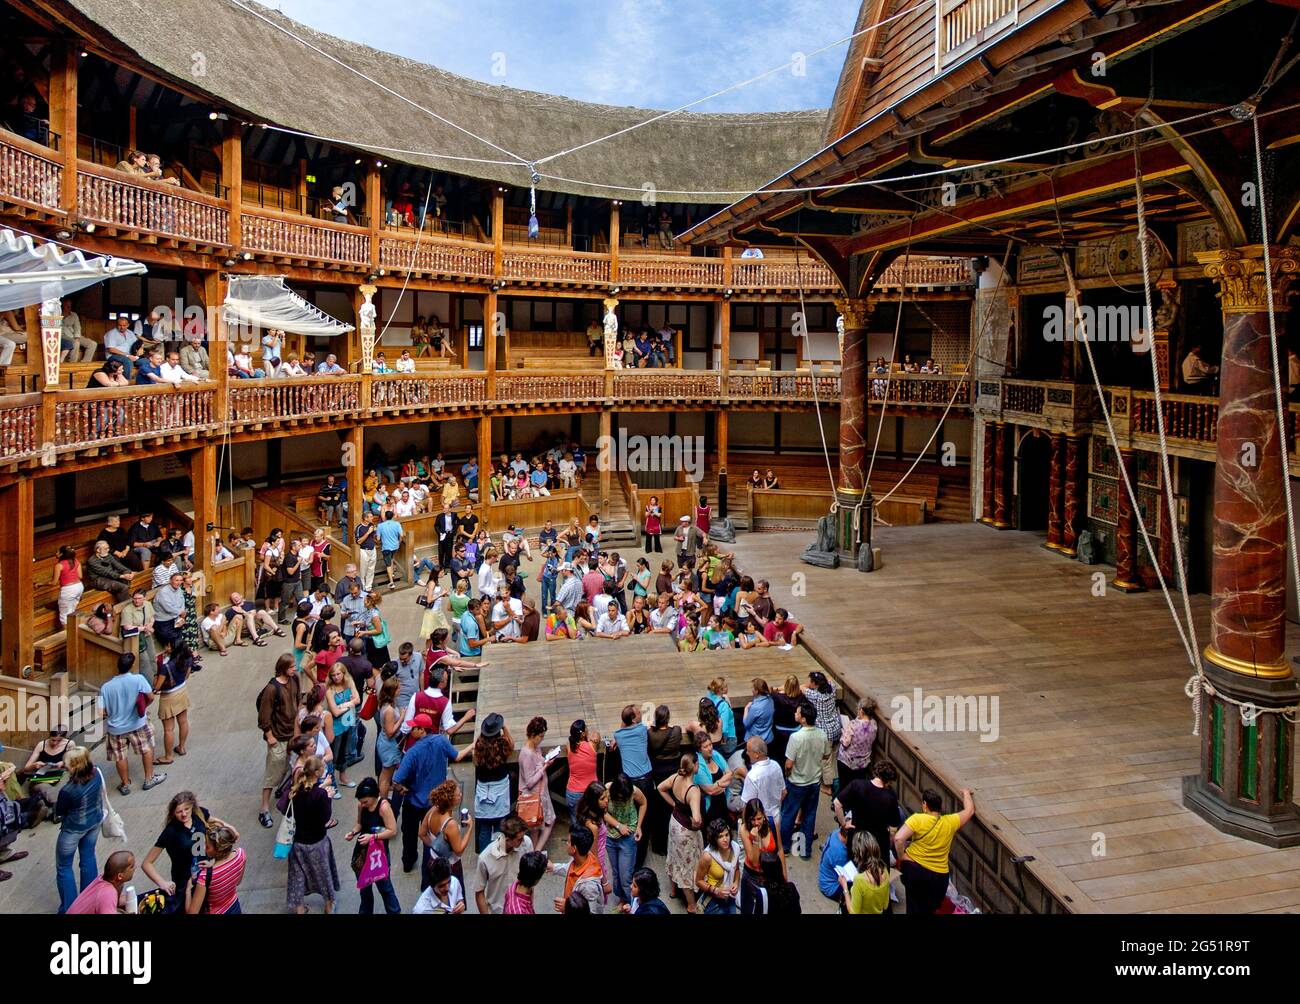 Innenansicht von William Shakespeares Globe Theatre mit Publikum, London, England, Großbritannien Stockfoto